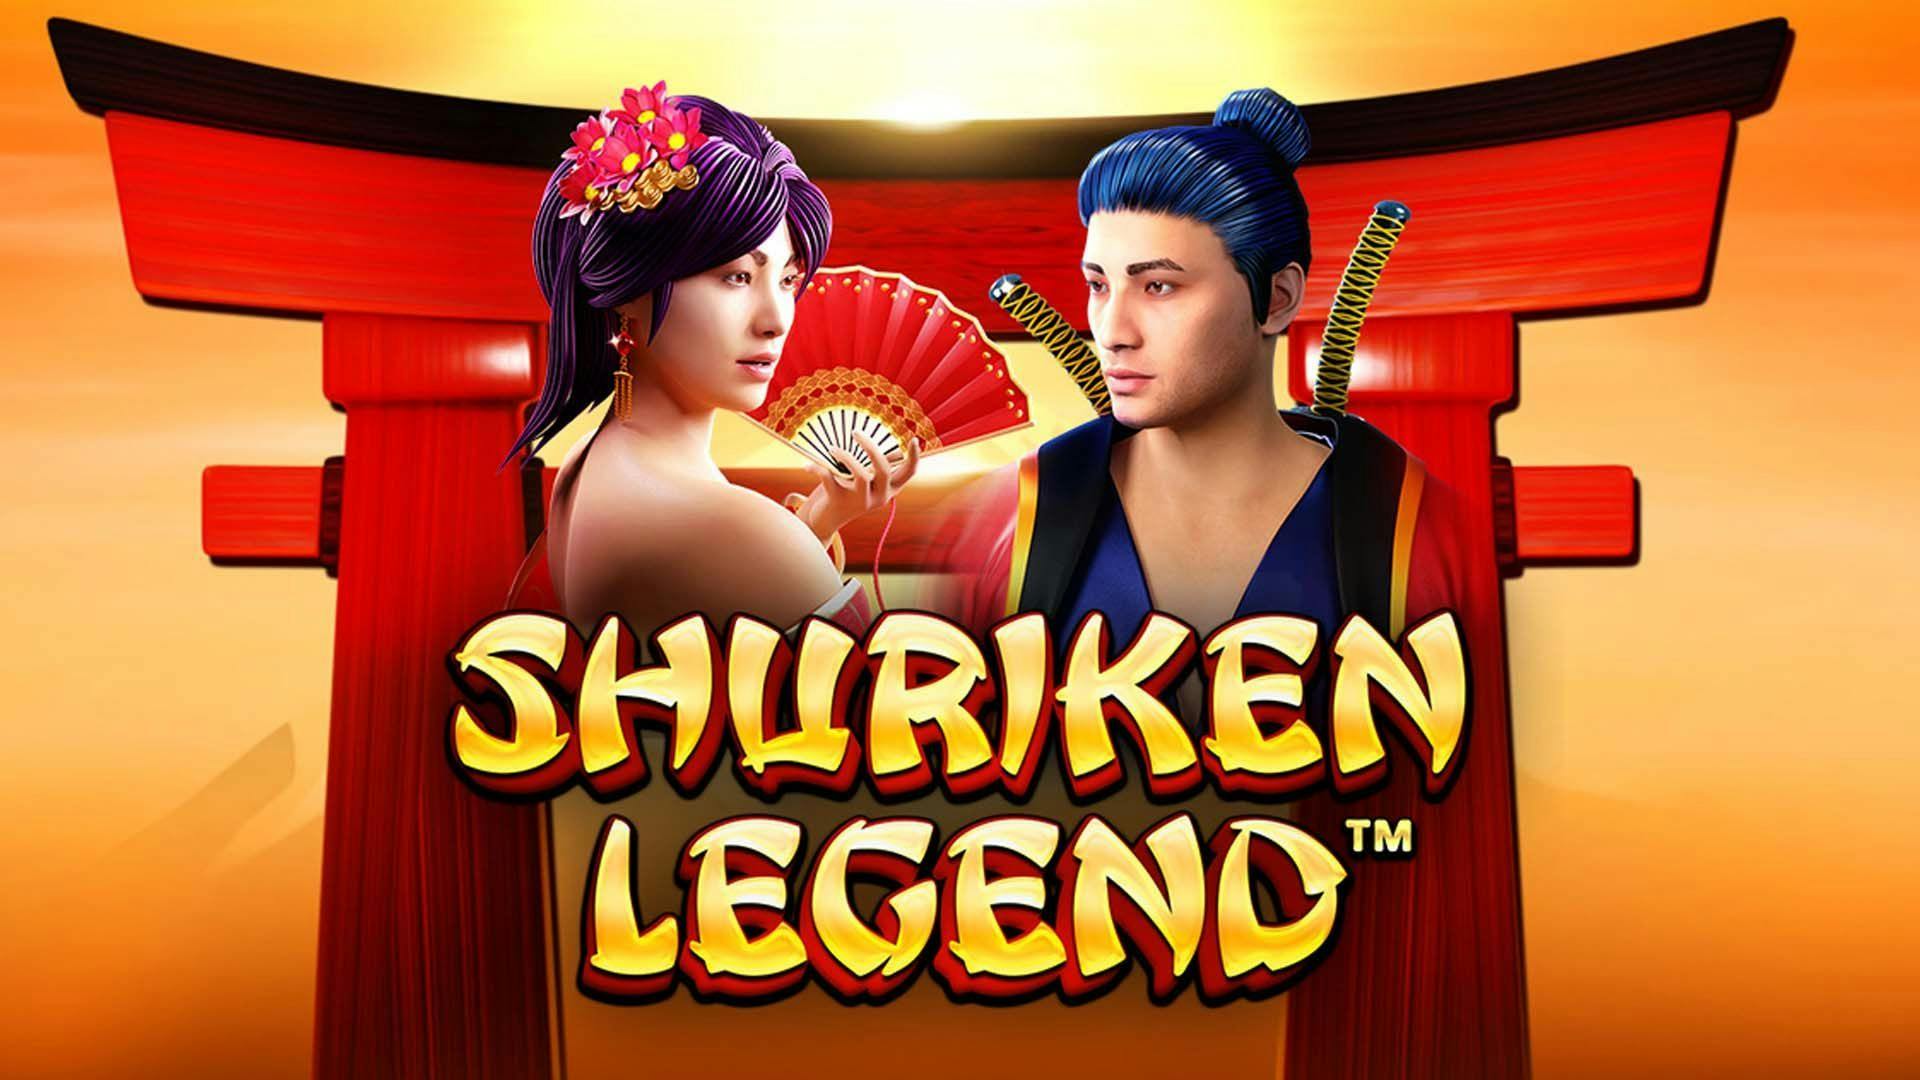 Shuriken Legend Slot Machine Online Free Game Play